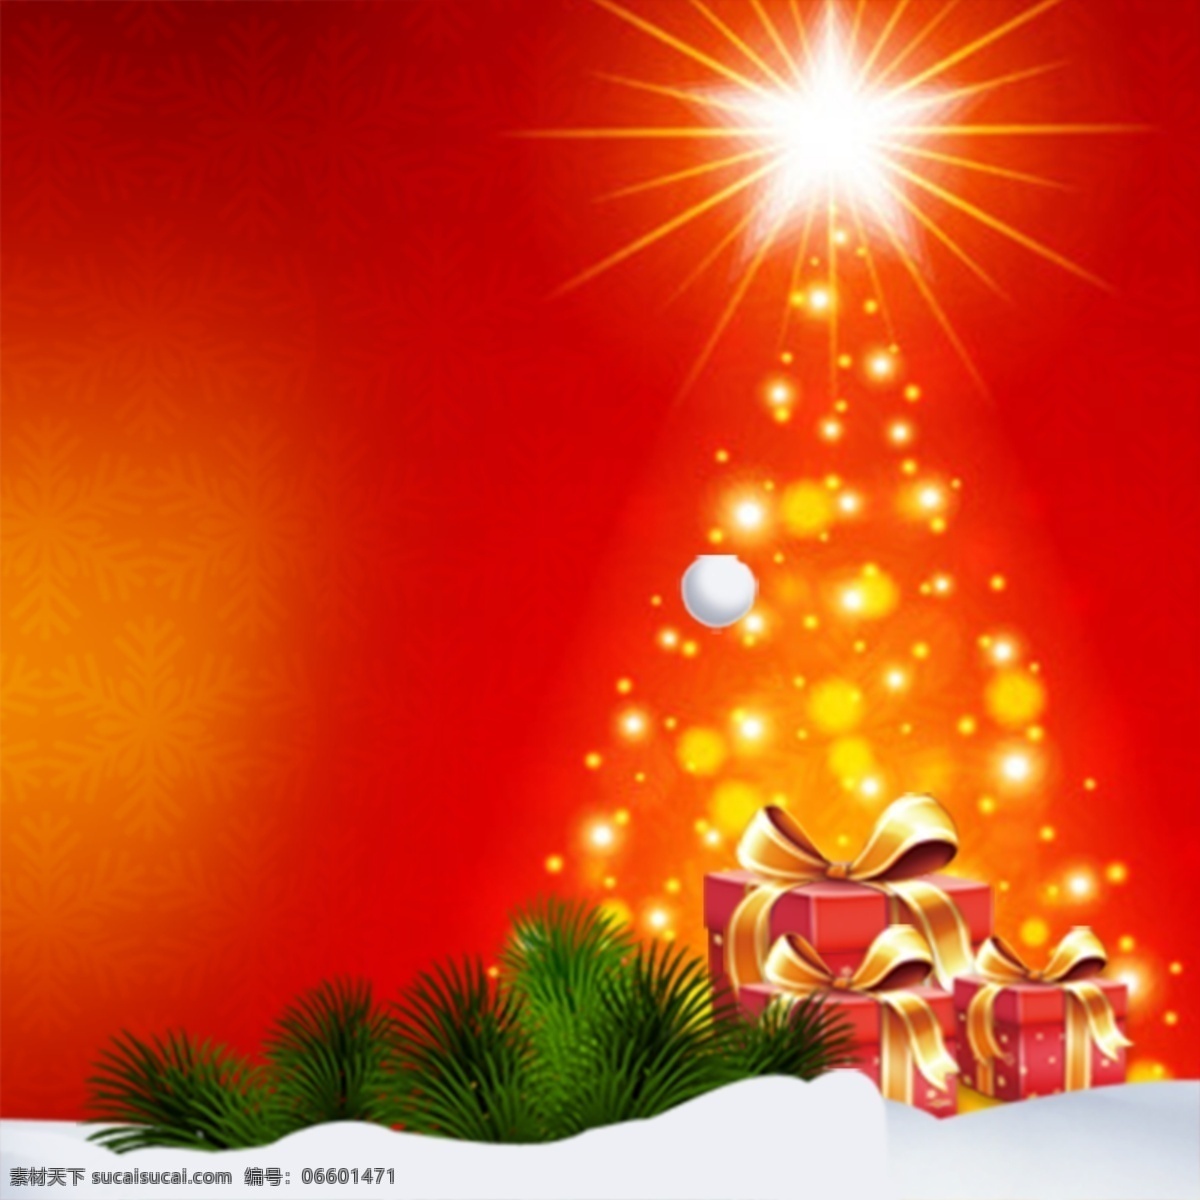 圣诞背景主图 放射光 光线 欢乐圣诞 礼盒 庆圣诞 圣诞节 圣诞节背景 圣诞节海报 圣诞节展架 圣诞快乐 圣诞特惠 圣诞驯鹿 圣诞树 红色